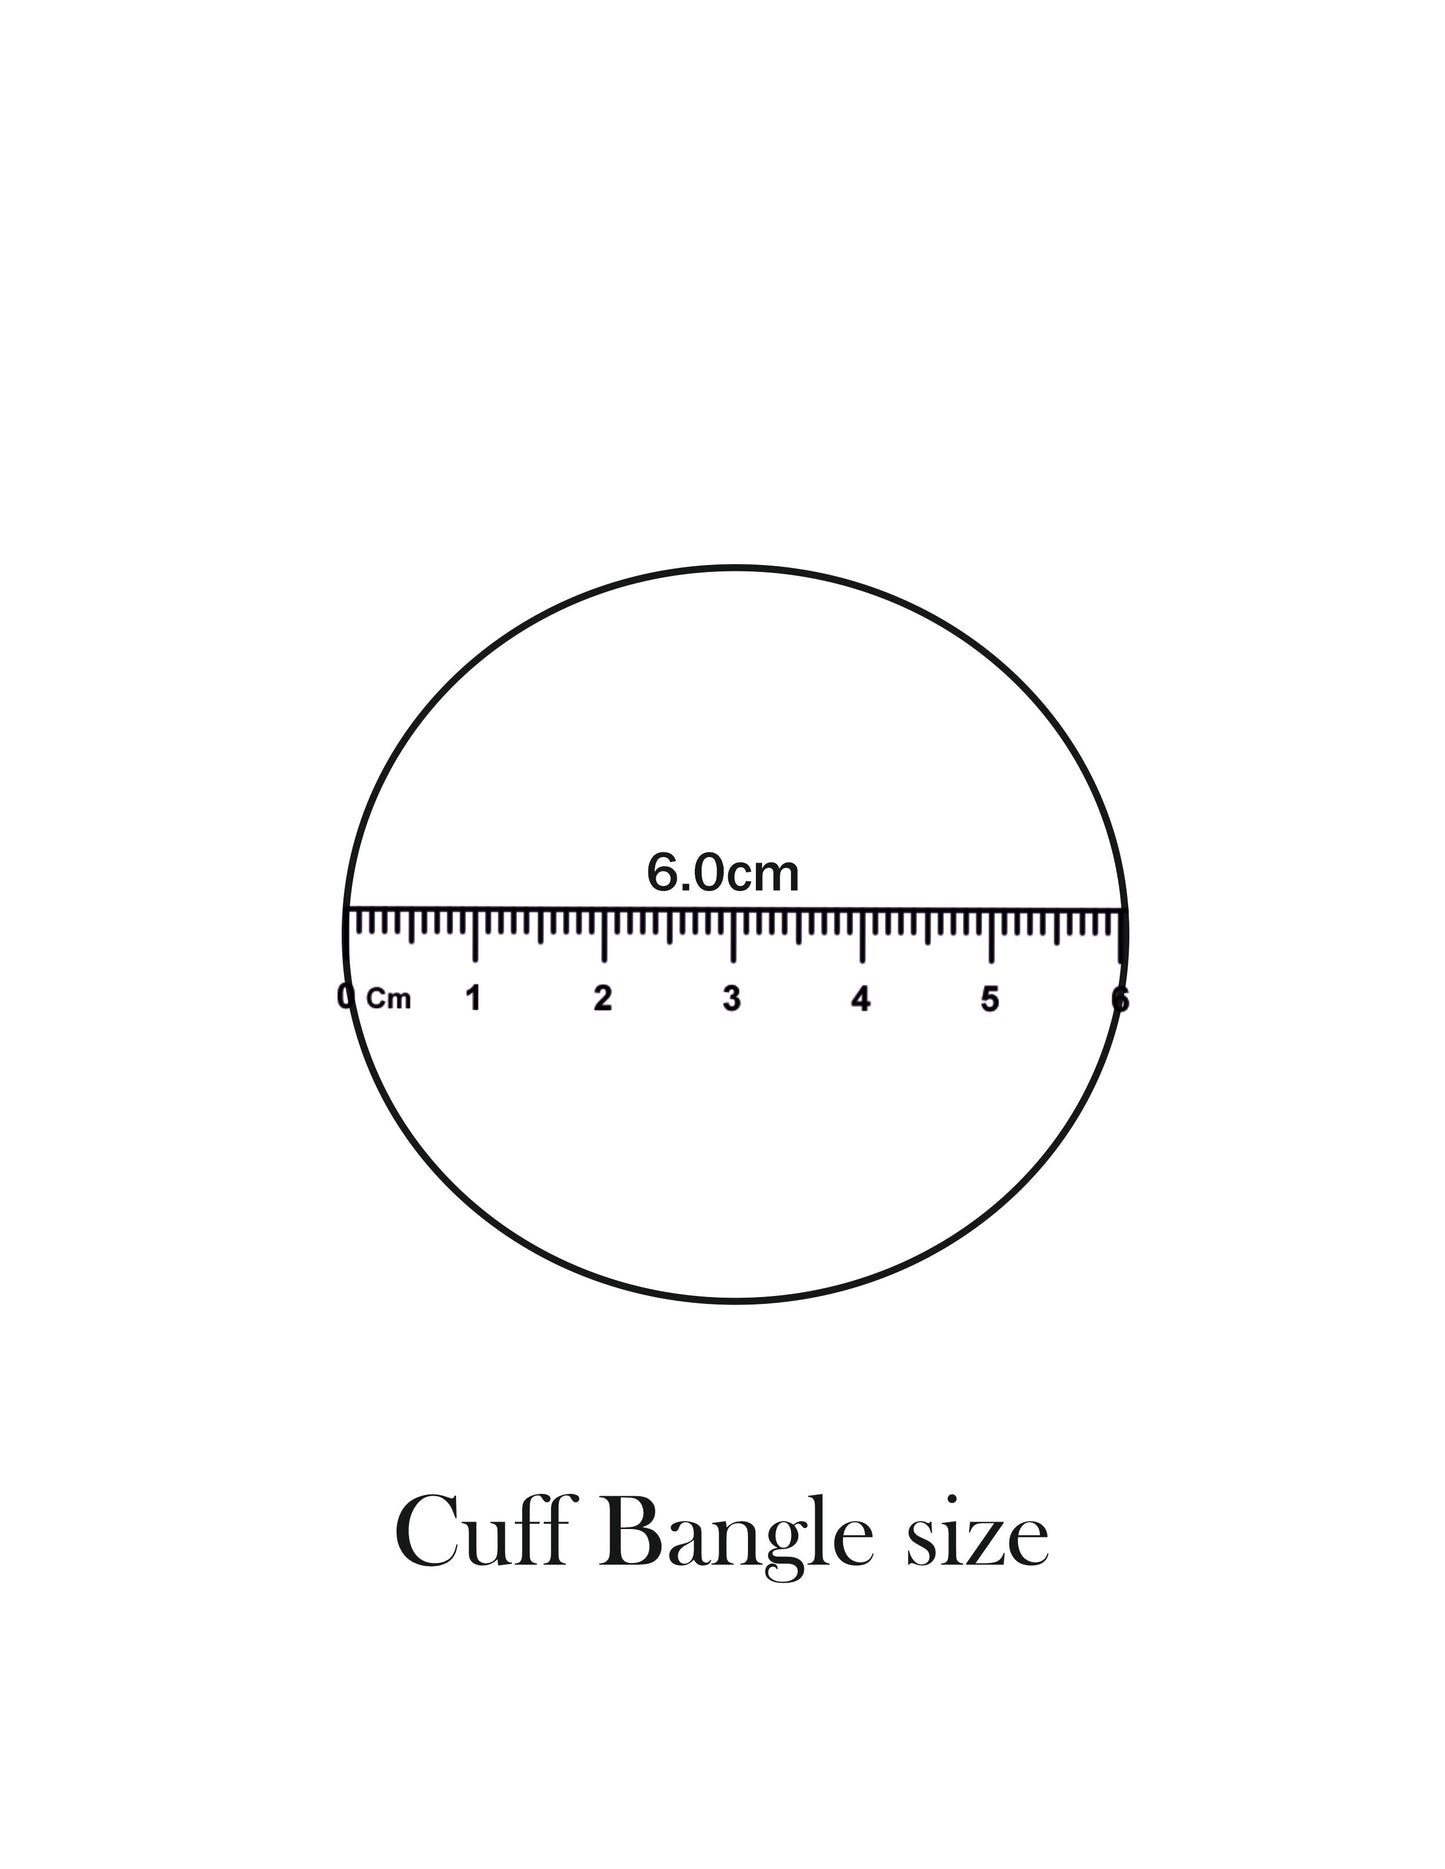 CK Cuff Bangle